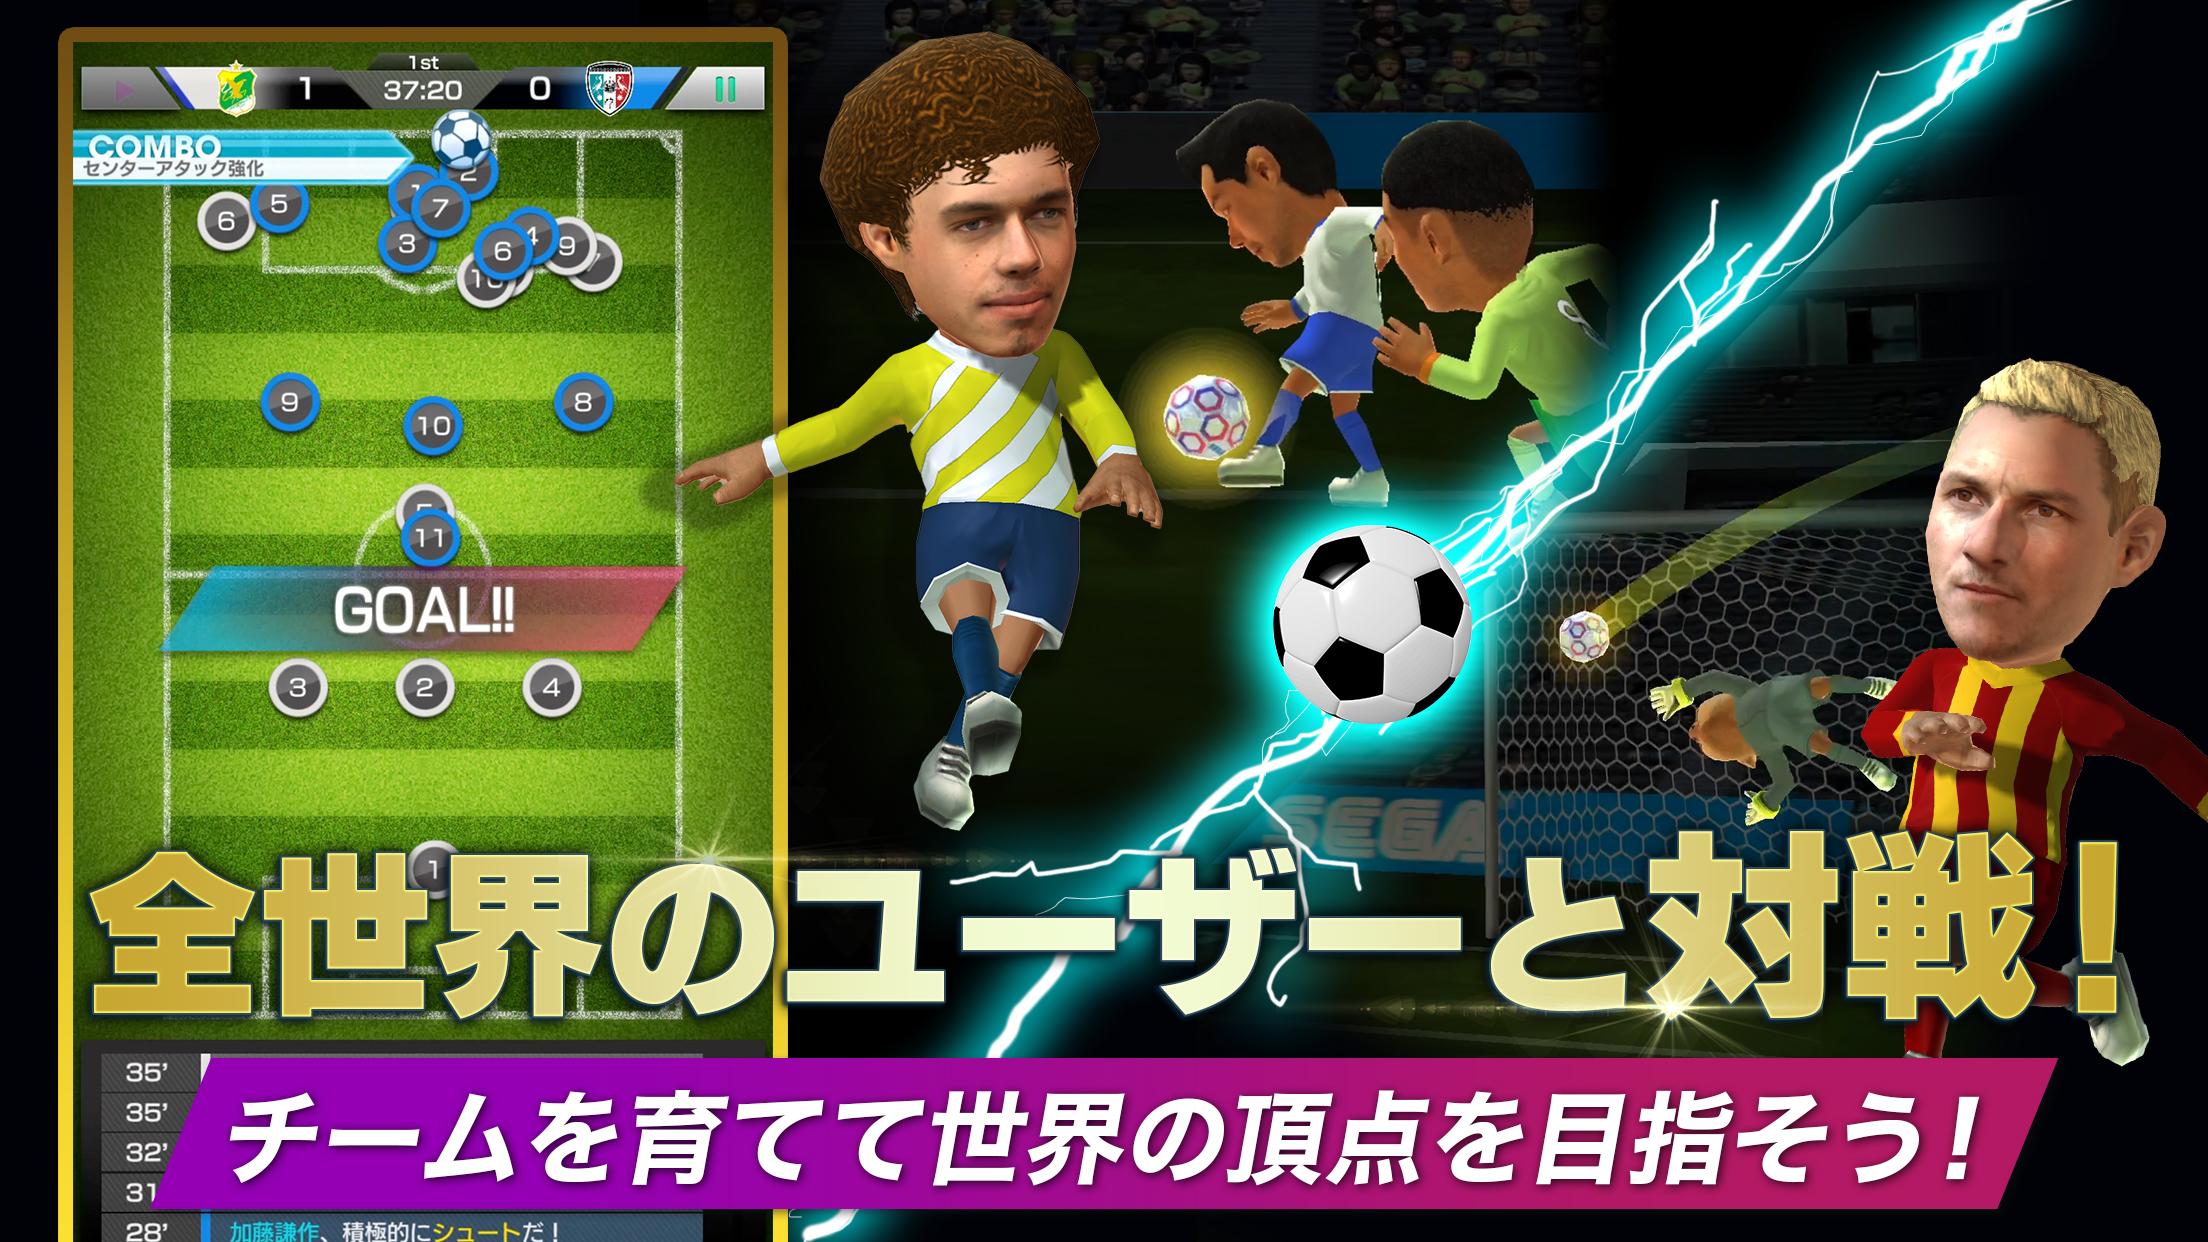 サッカー クラブ経営 サカつくrtw サッカーのオーナーとしてサッカーでクラブ経営 Sega For Android Apk Download